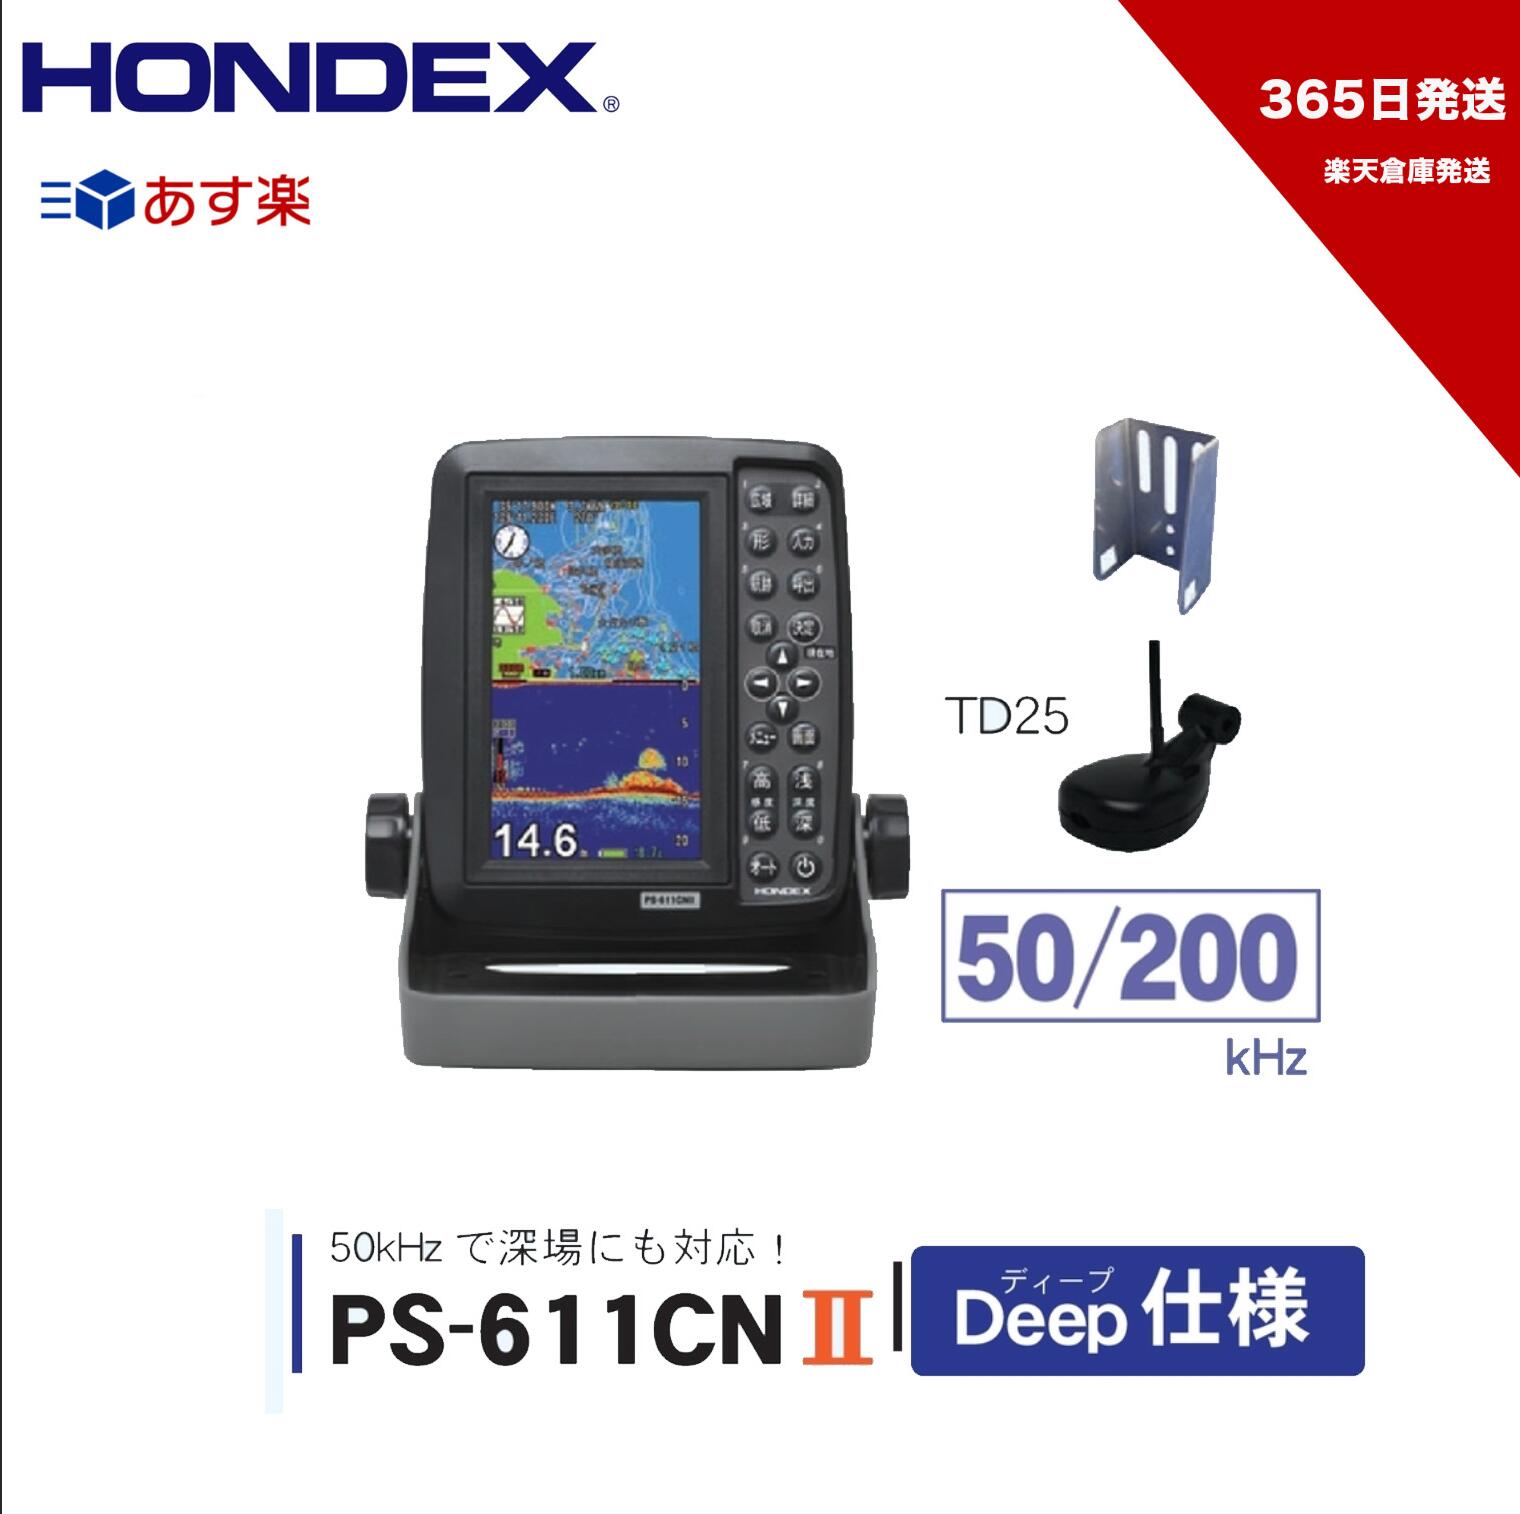 【365日発送】HONDEX ■PS-611CN2 DP Deep仕様 ホンデックス GPS内蔵 TD25振動子 楽天倉庫発送 ポータブル 本多電子 機械屋 あす楽